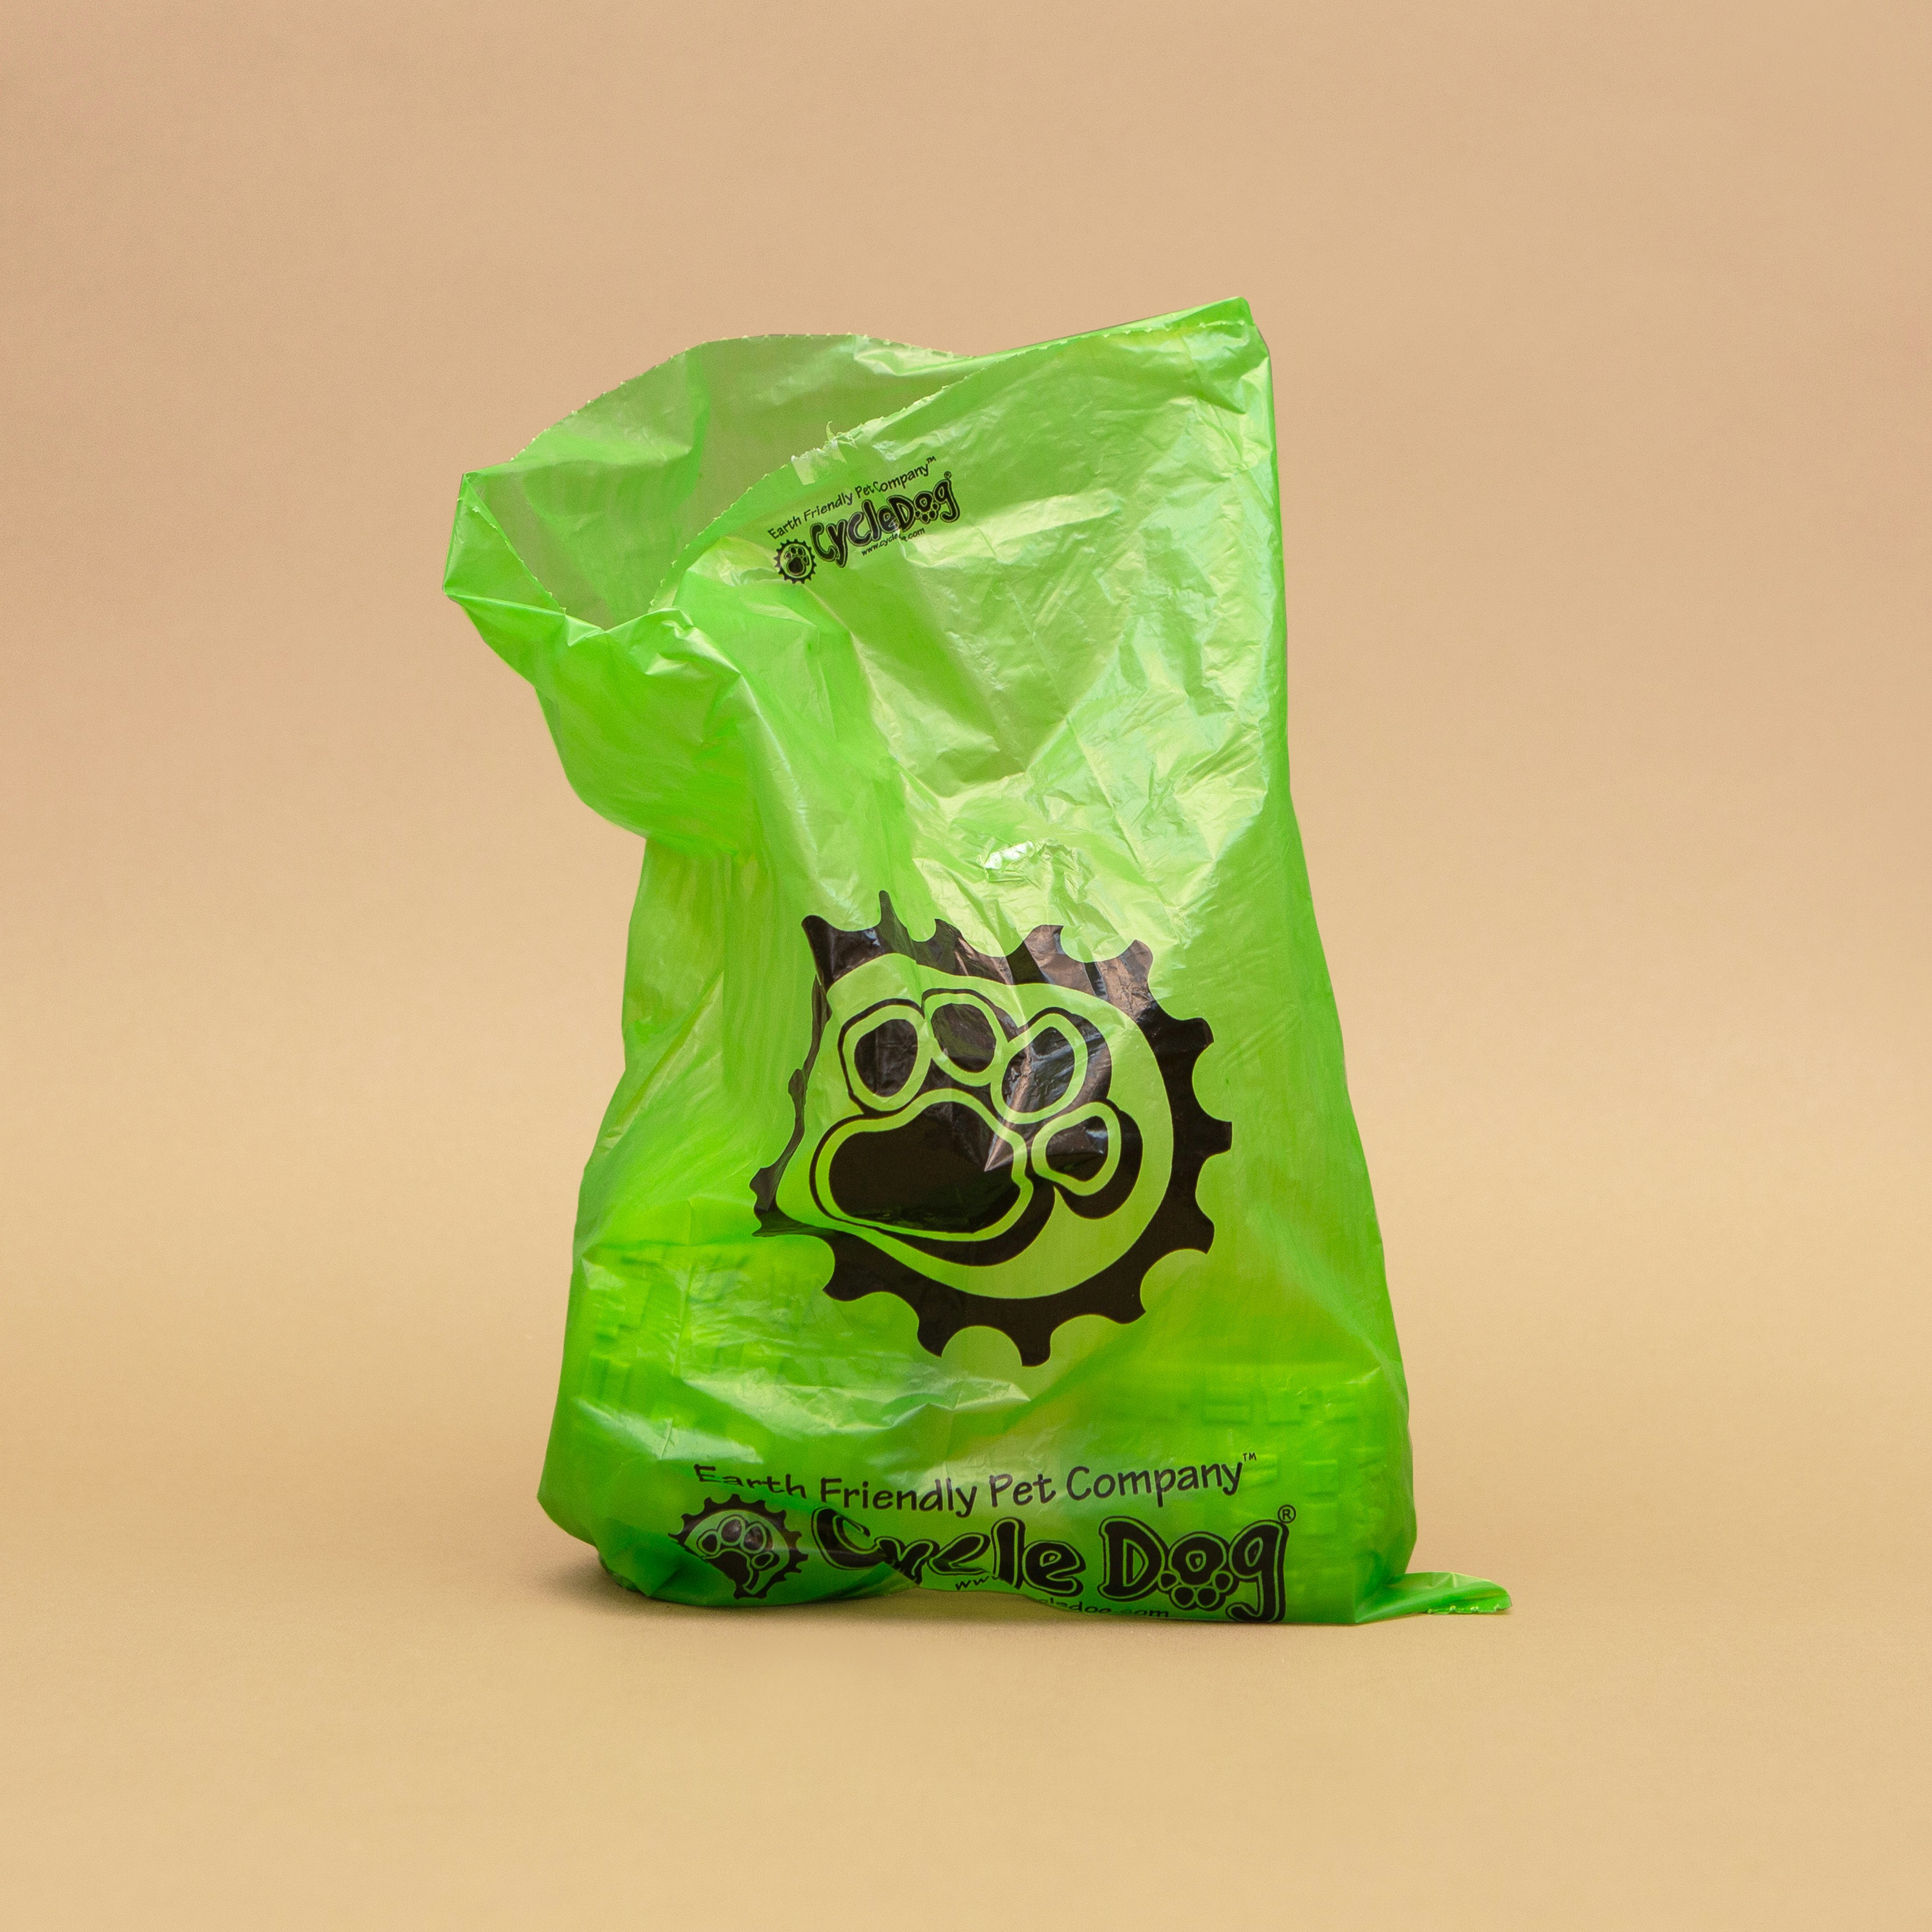 A green translucent dog-poop bag